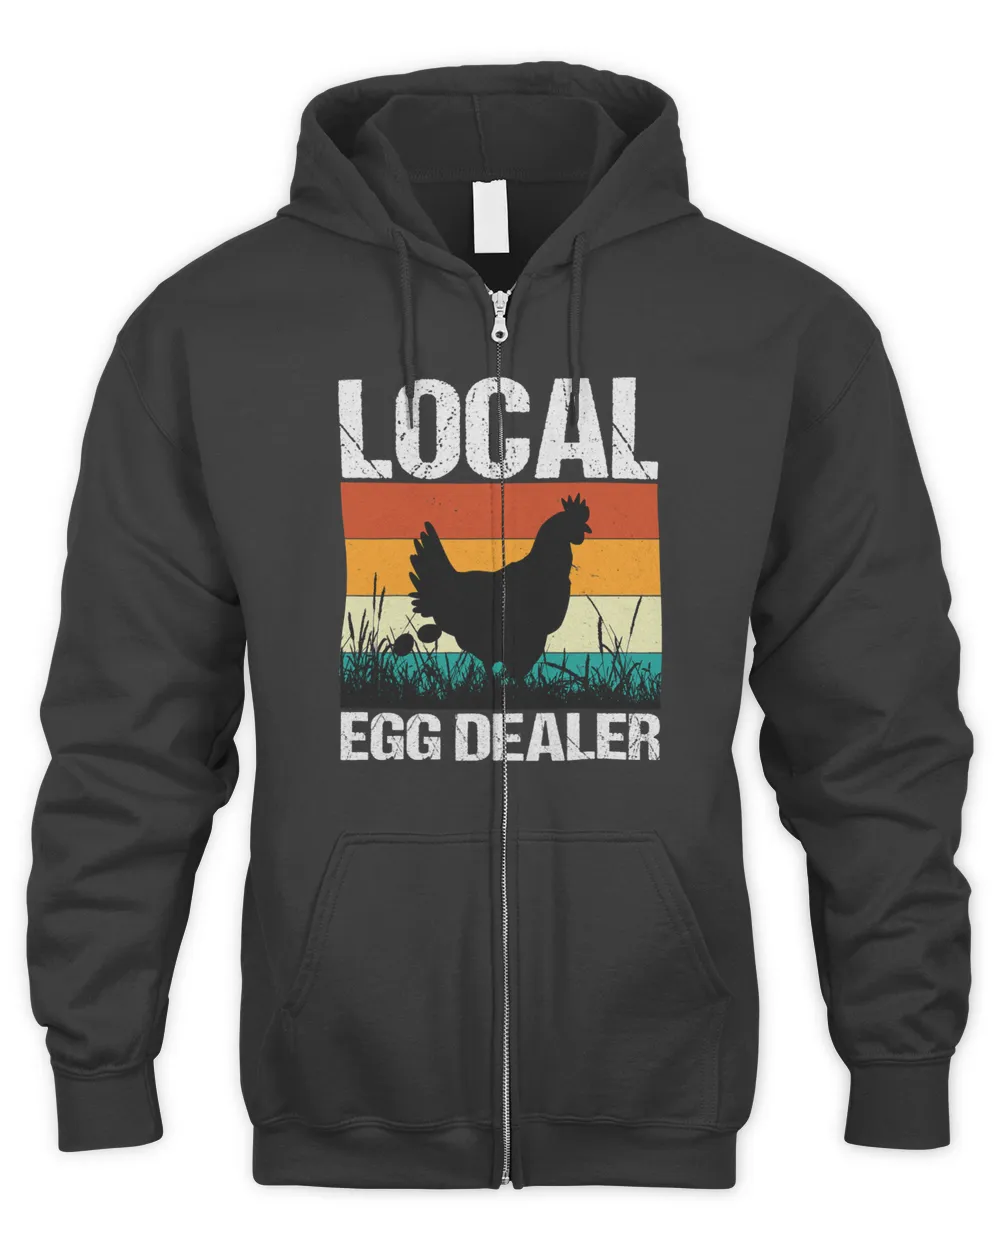 Support Local Egg Dealer Chicken Egg Lover Farm Farmer